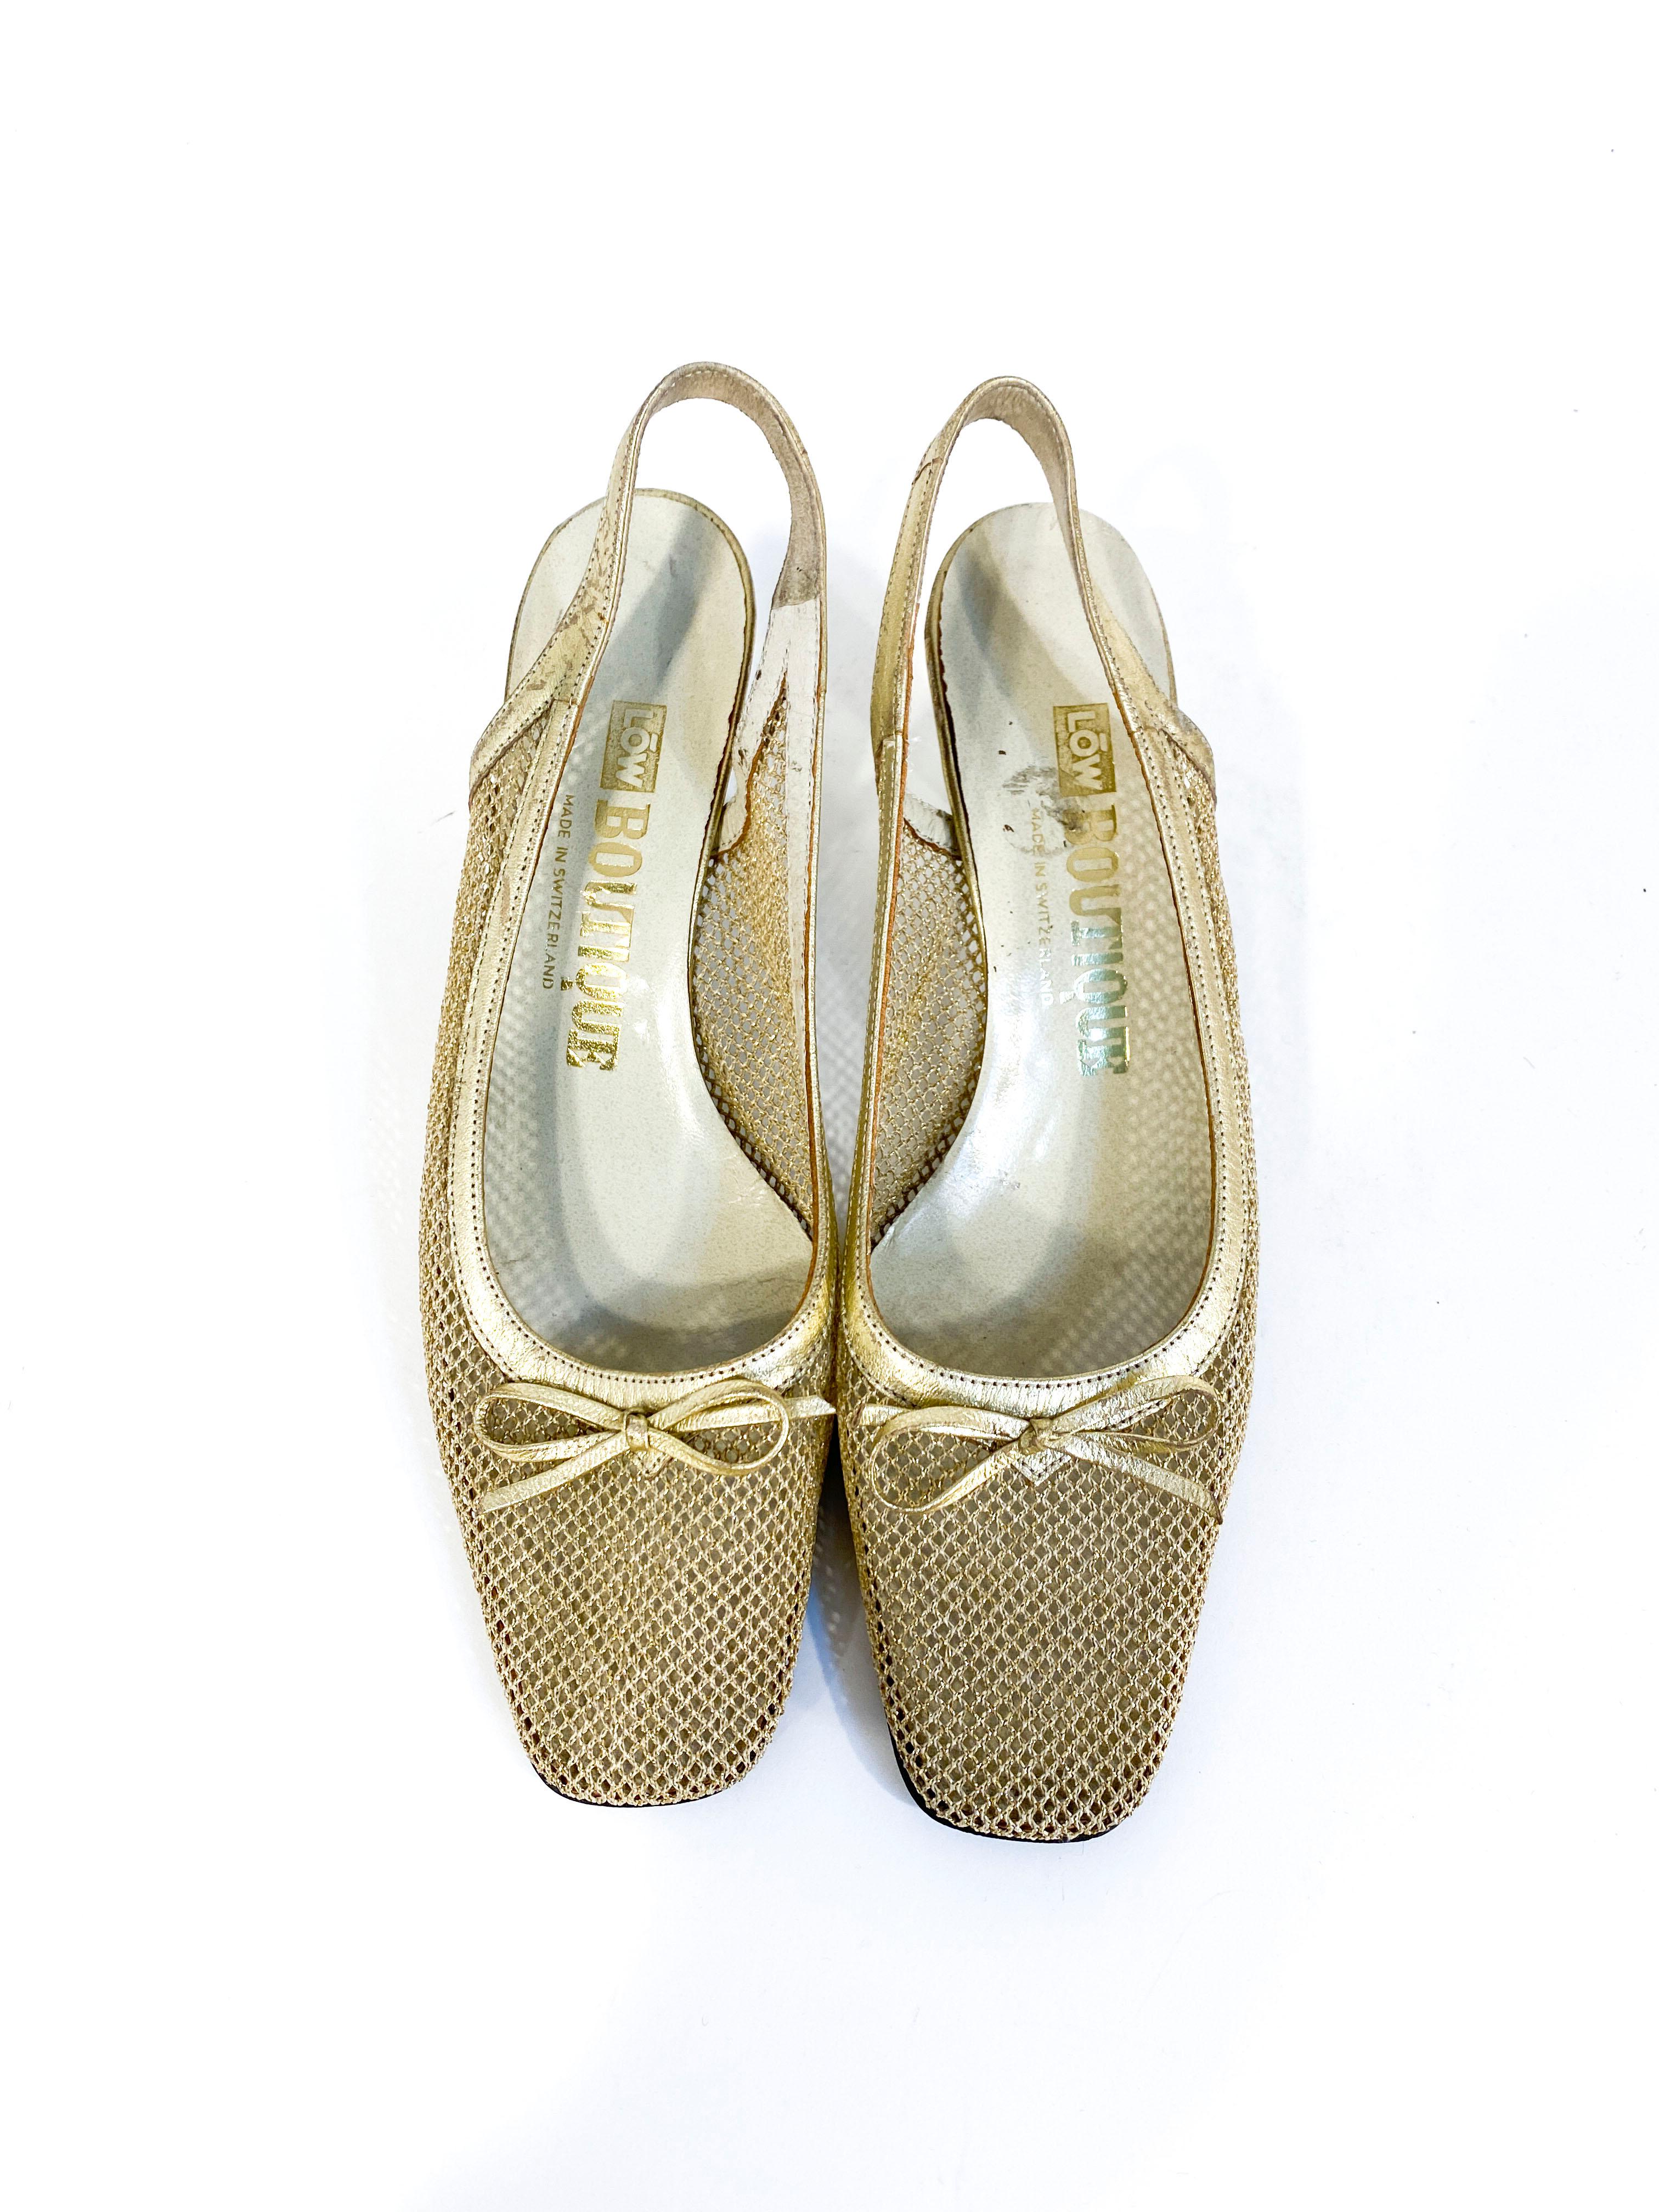 70s gold heels